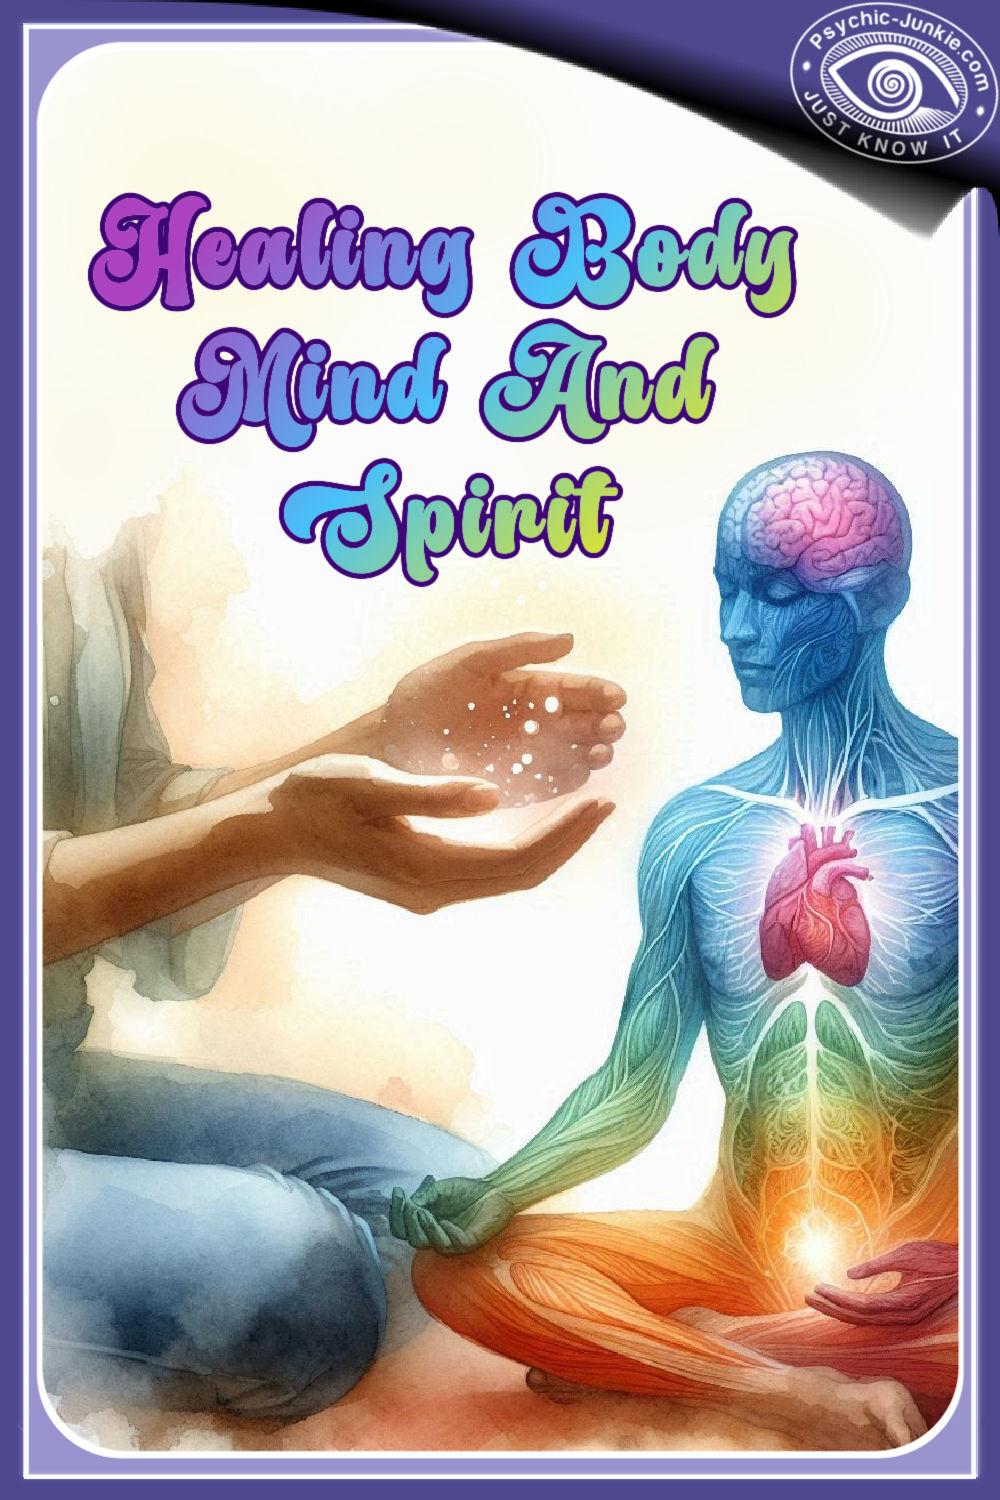 Mind Body Spirit Connection Healing